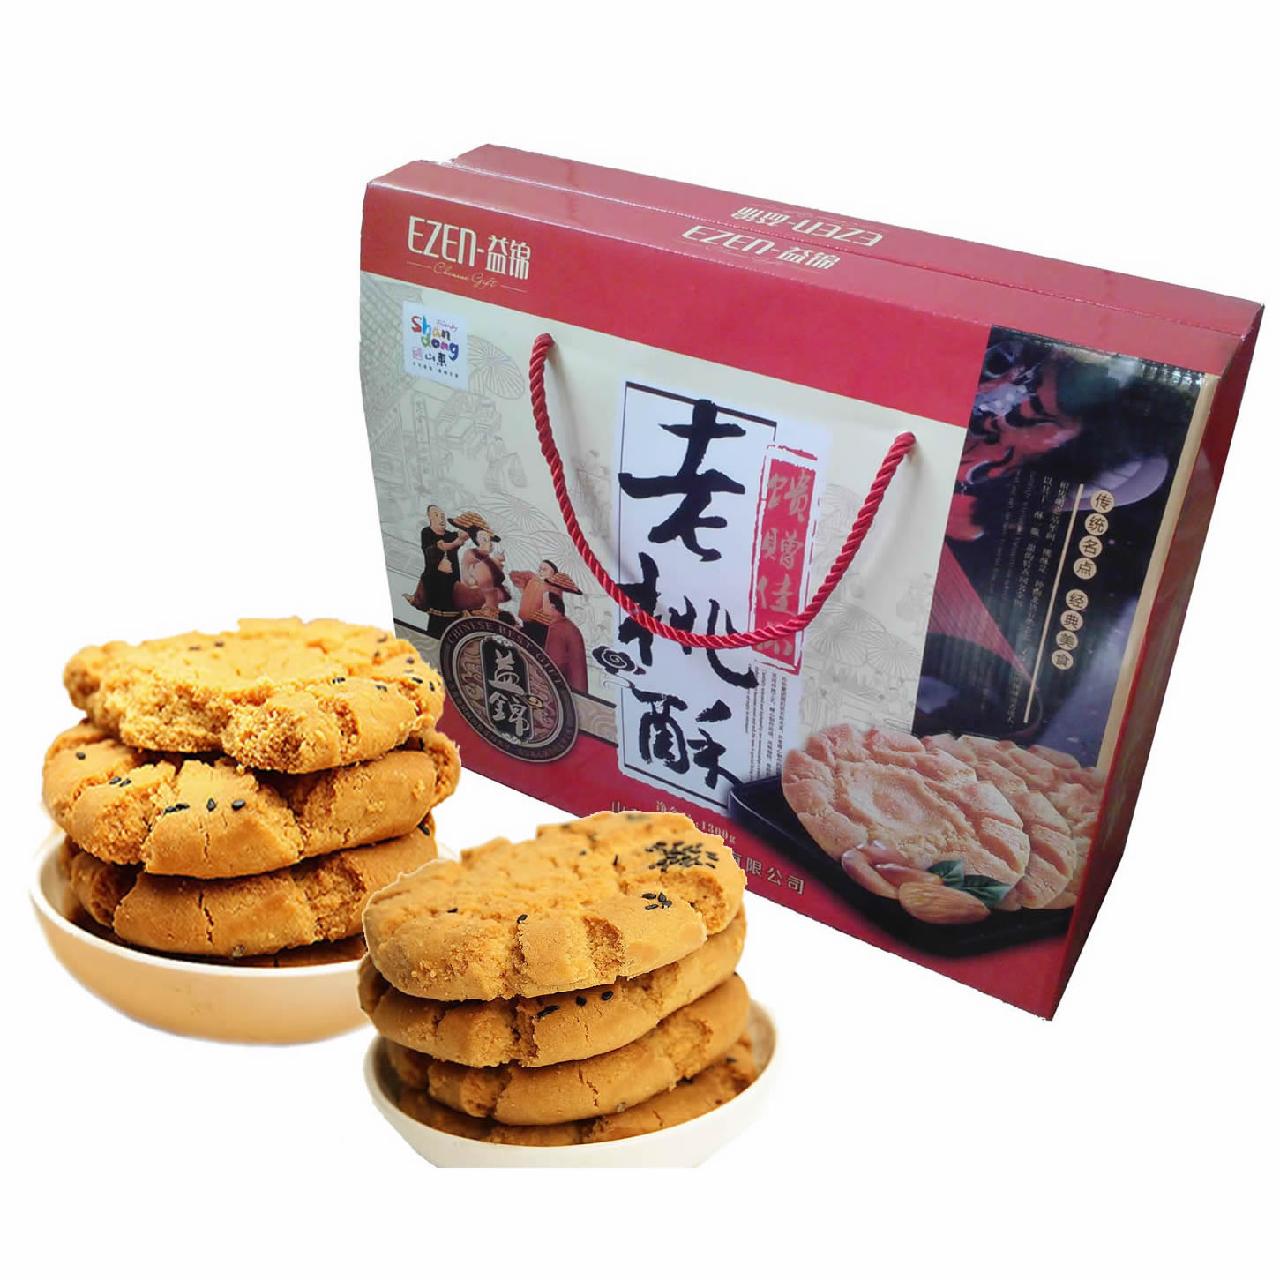 益锦老桃酥饼干礼盒装1080g-中国 山东莱芜-益